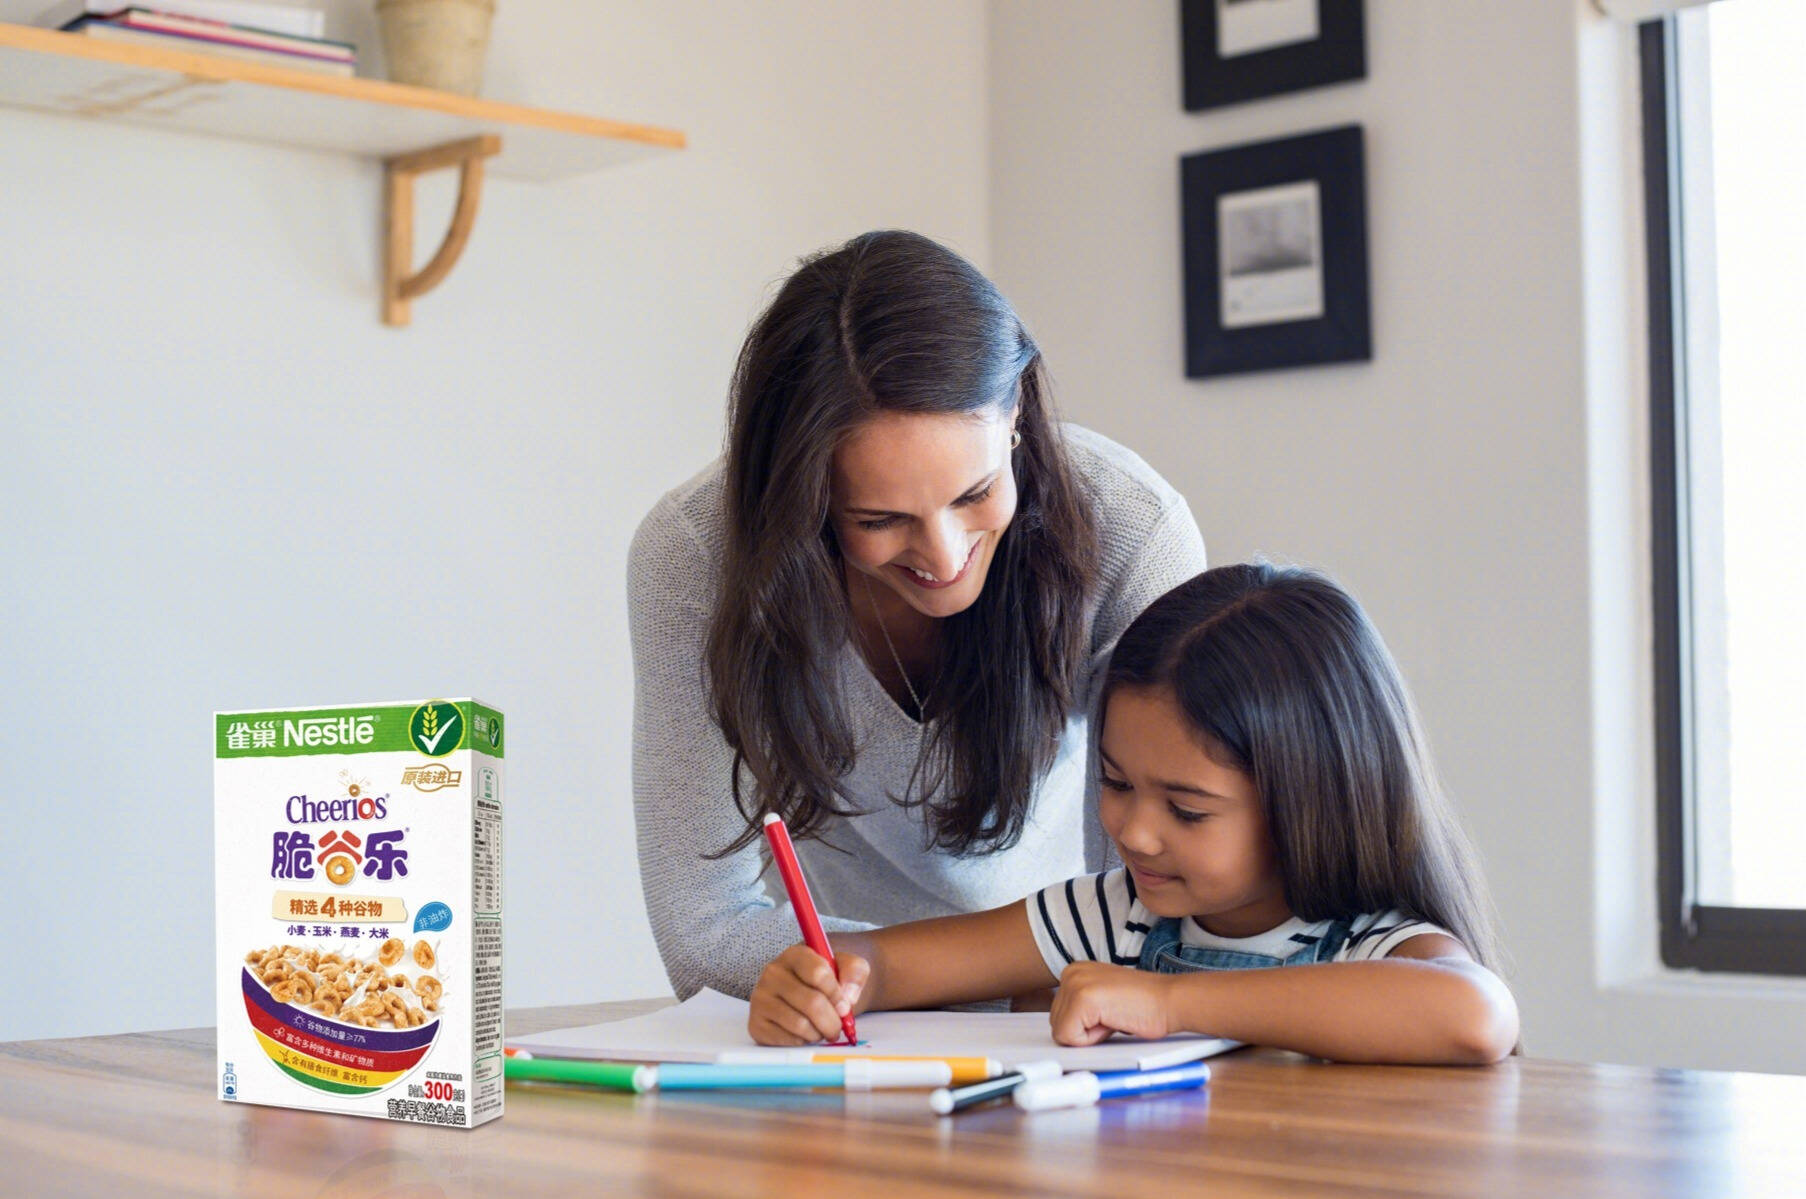 为孩子学习增添动力，雀巢麦片营养好味道